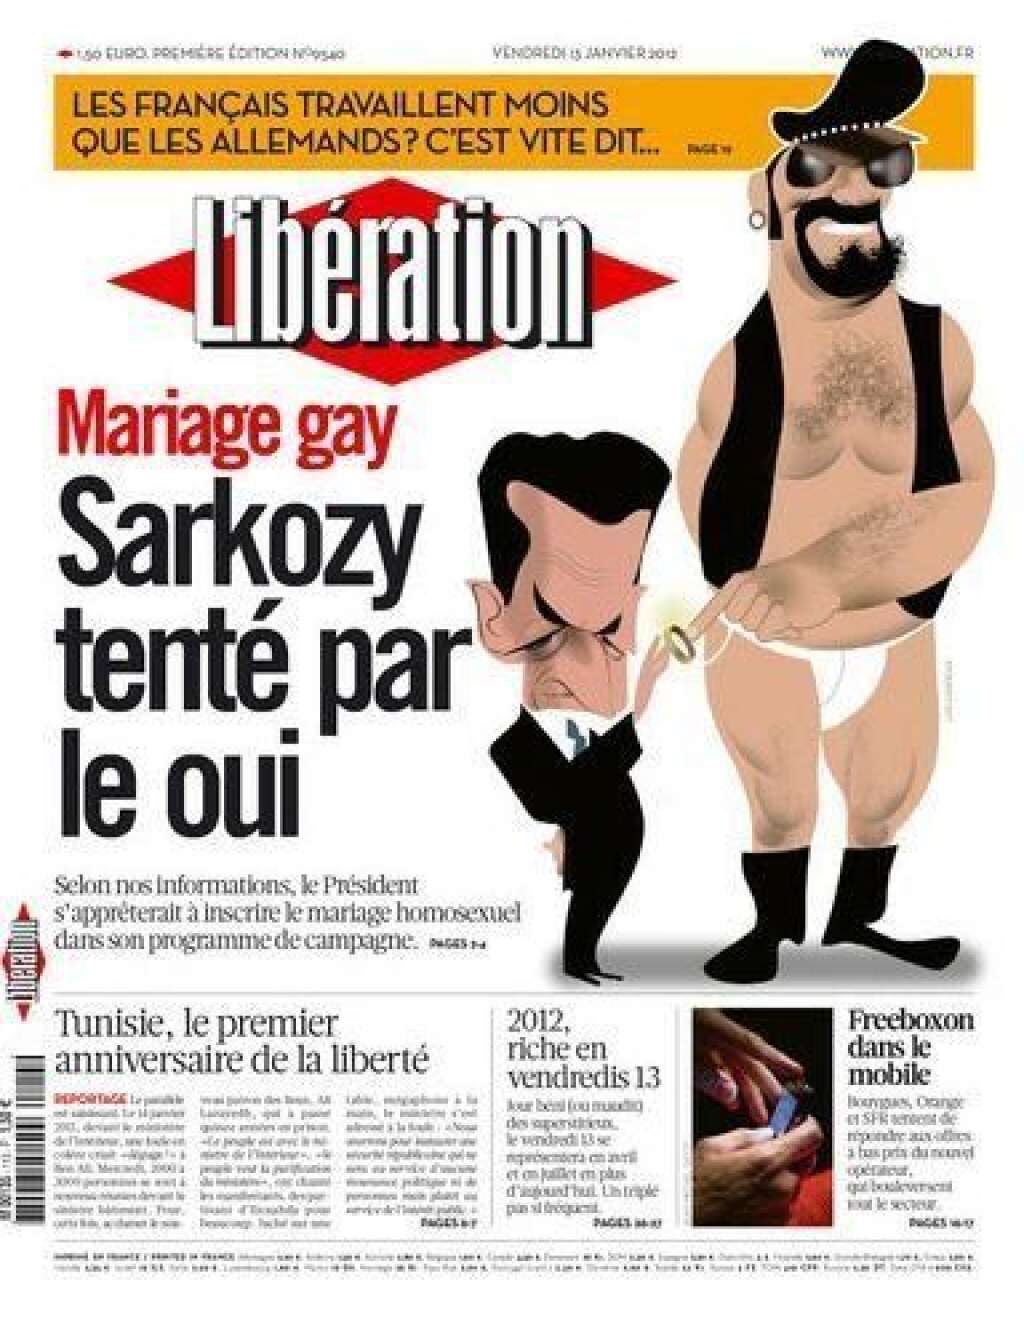 13 janvier 2012: Sarkozy tenté de dire oui - Le quotidien <em>Libération</em> assure en Une que le président de la République pourrait proposer une union civile pour les couples homosexuels. Orientation qui sera démentie par la suite par le candidat UMP.  <strong>A RELIRE:</strong> <a href="http://www.huffingtonpost.fr/2012/03/26/homophobie-candidats-presidentielle-2012_n_1381258.html" target="_blank">Les candidats à la présidentielle et l'homophobie</a>